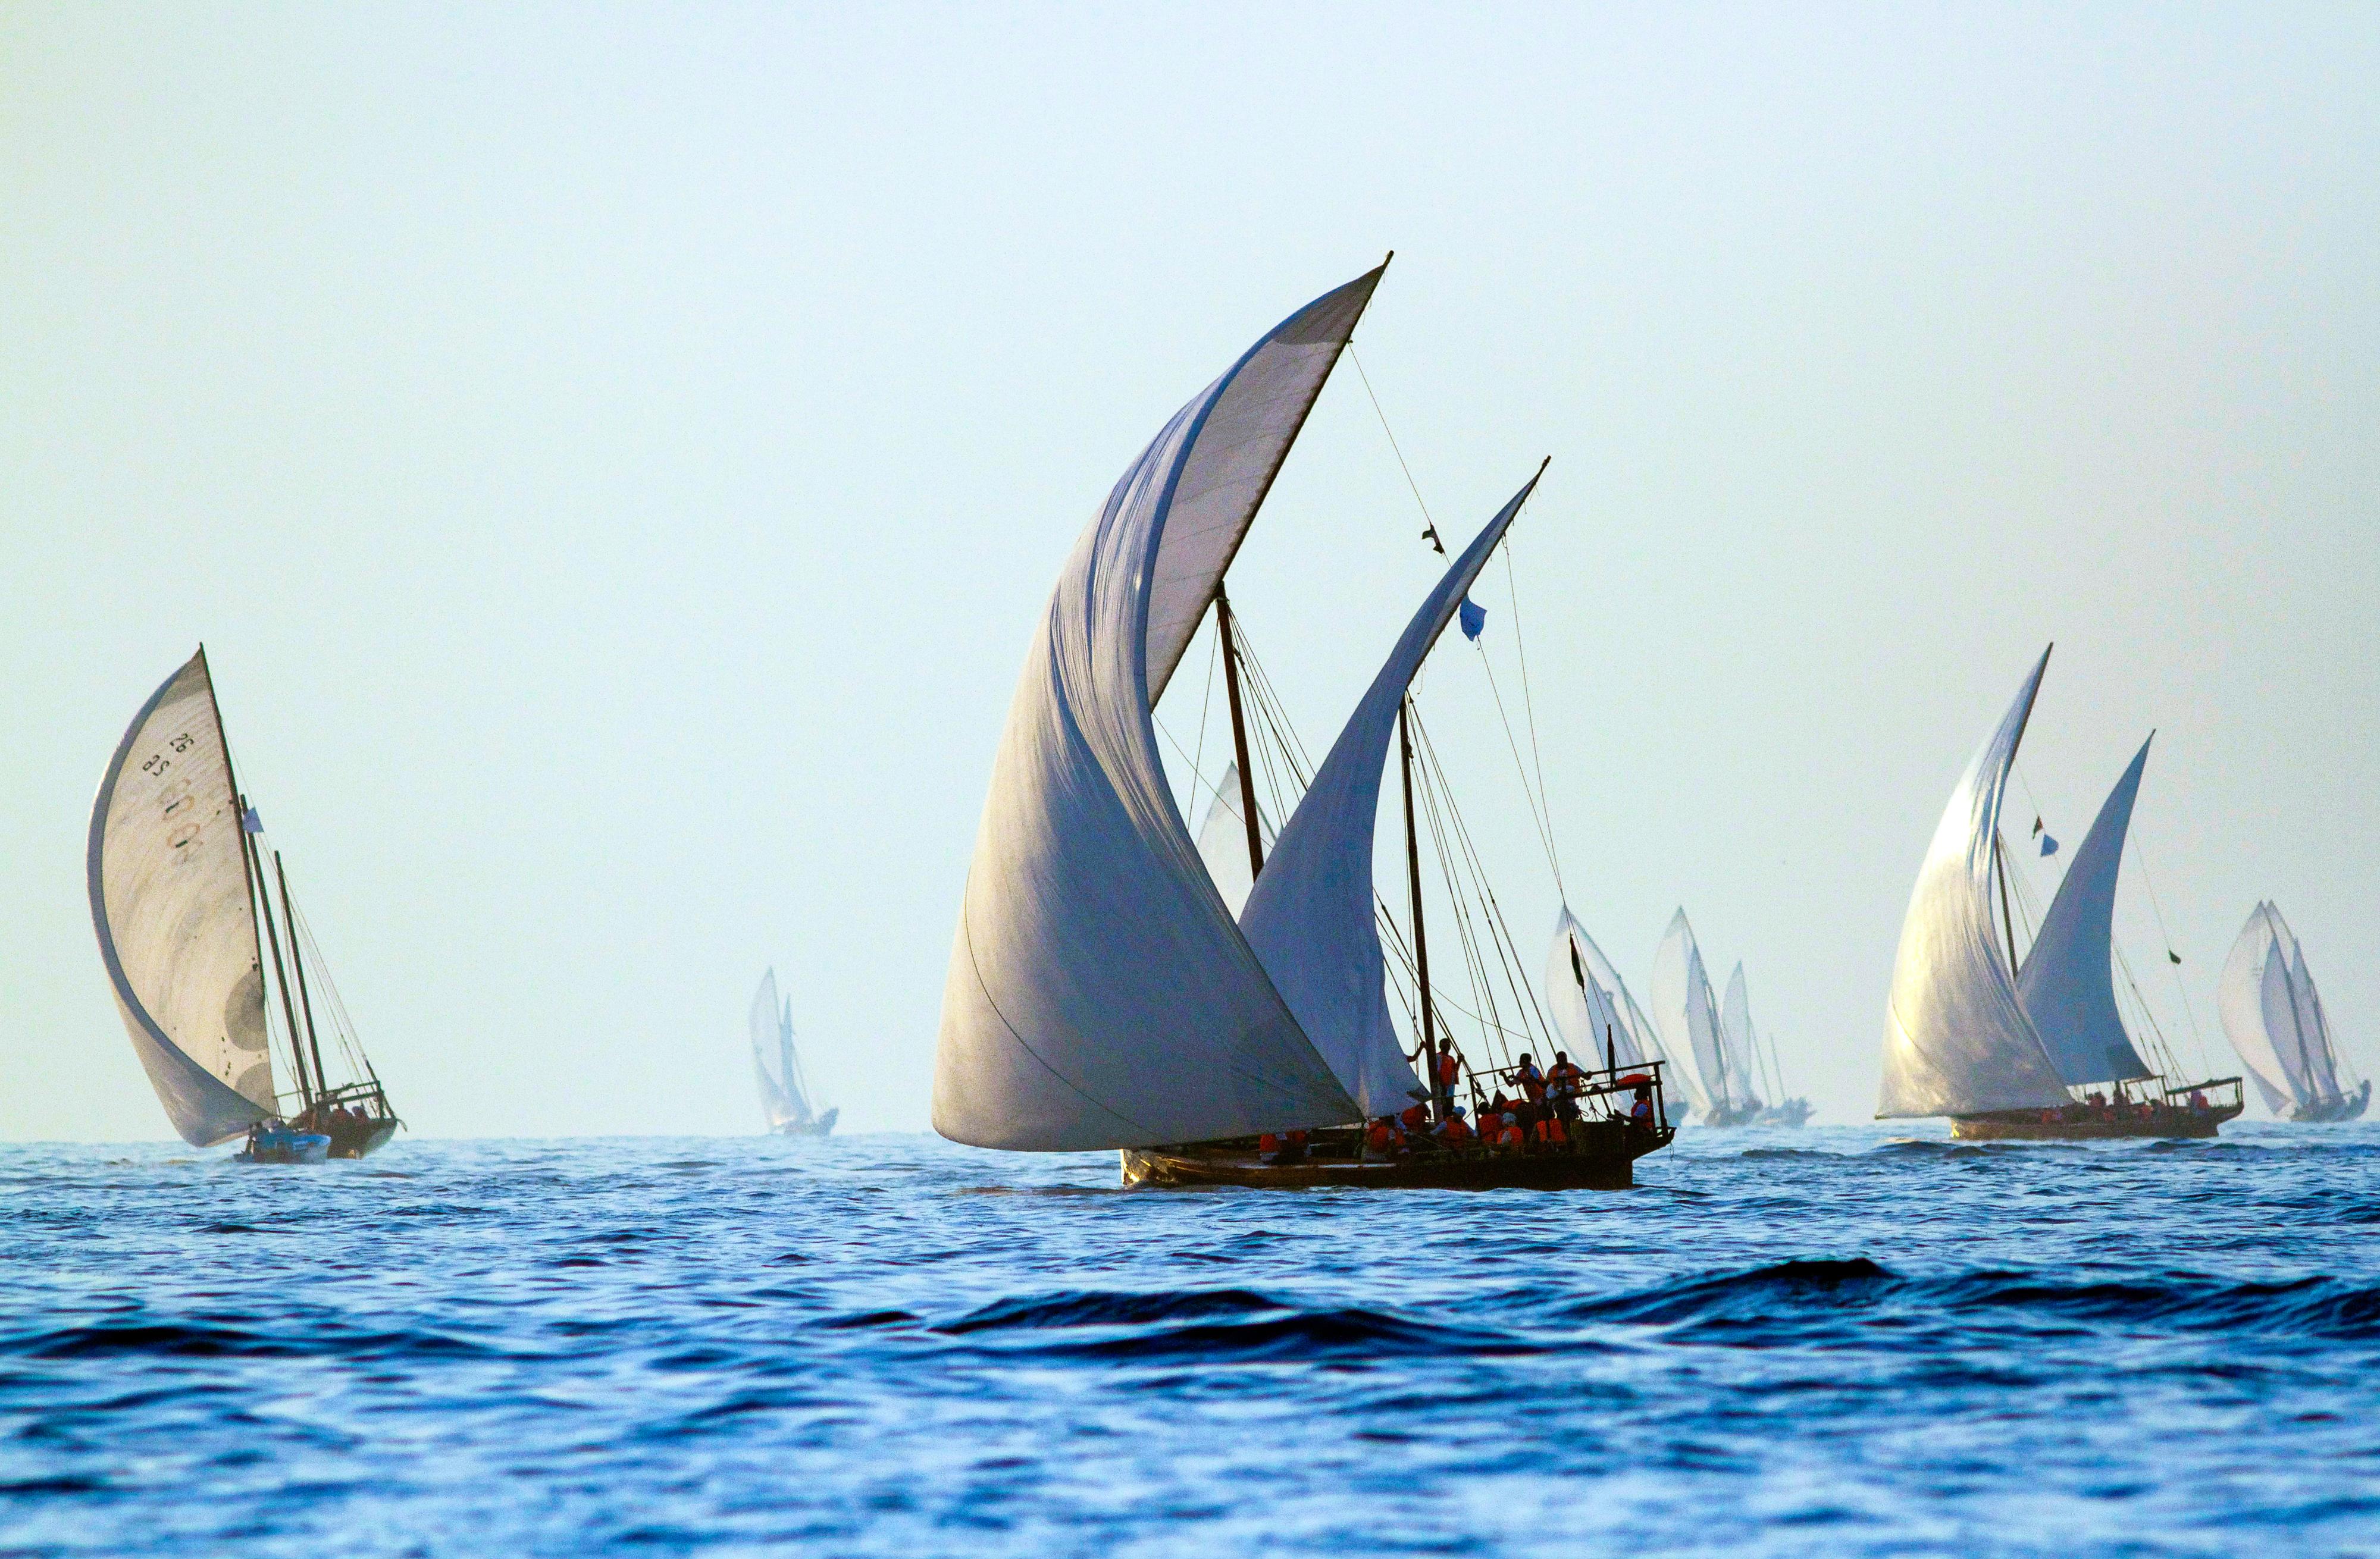 Inspiration
La famille de meubles Dhow fait référence aux voiles ondulantes des bateaux traditionnels omanais, un élément important de l'histoire maritime de la nation.

Artisanat
Bethan a réimaginé le mouvement des voiles dans un motif dessiné à la